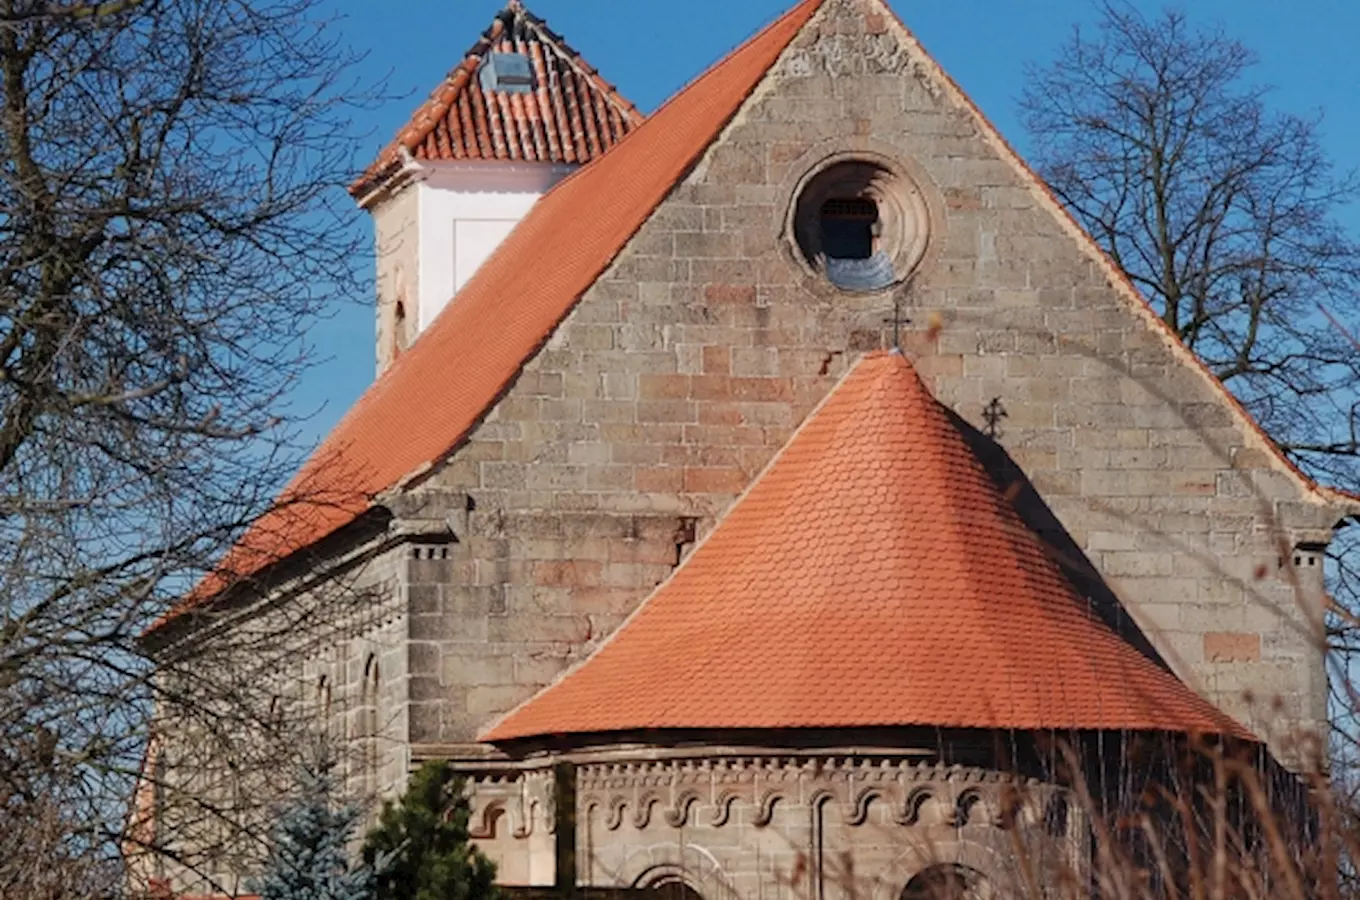 Kostel sv. Mikuláše v Potvorově